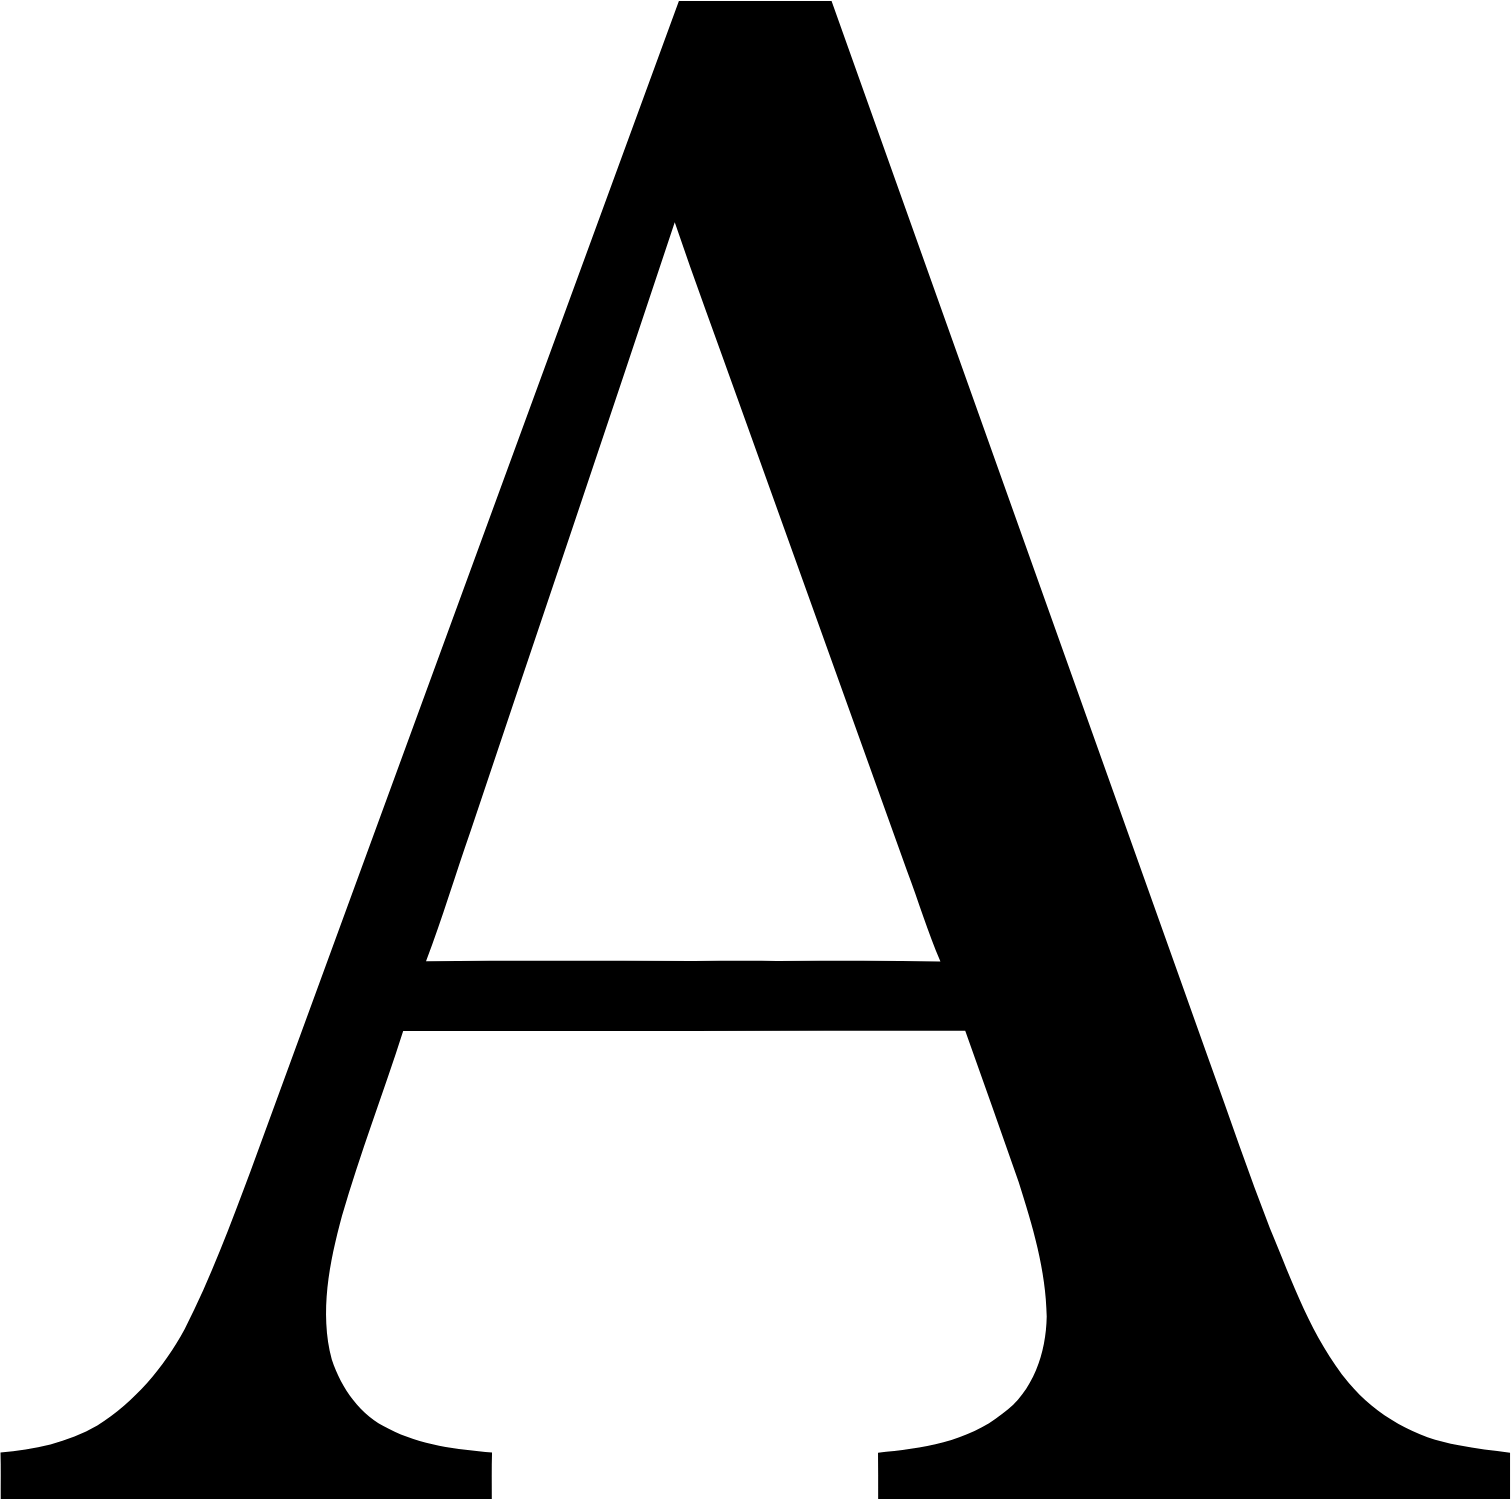 Corticeira Amorim logo (transparent PNG)